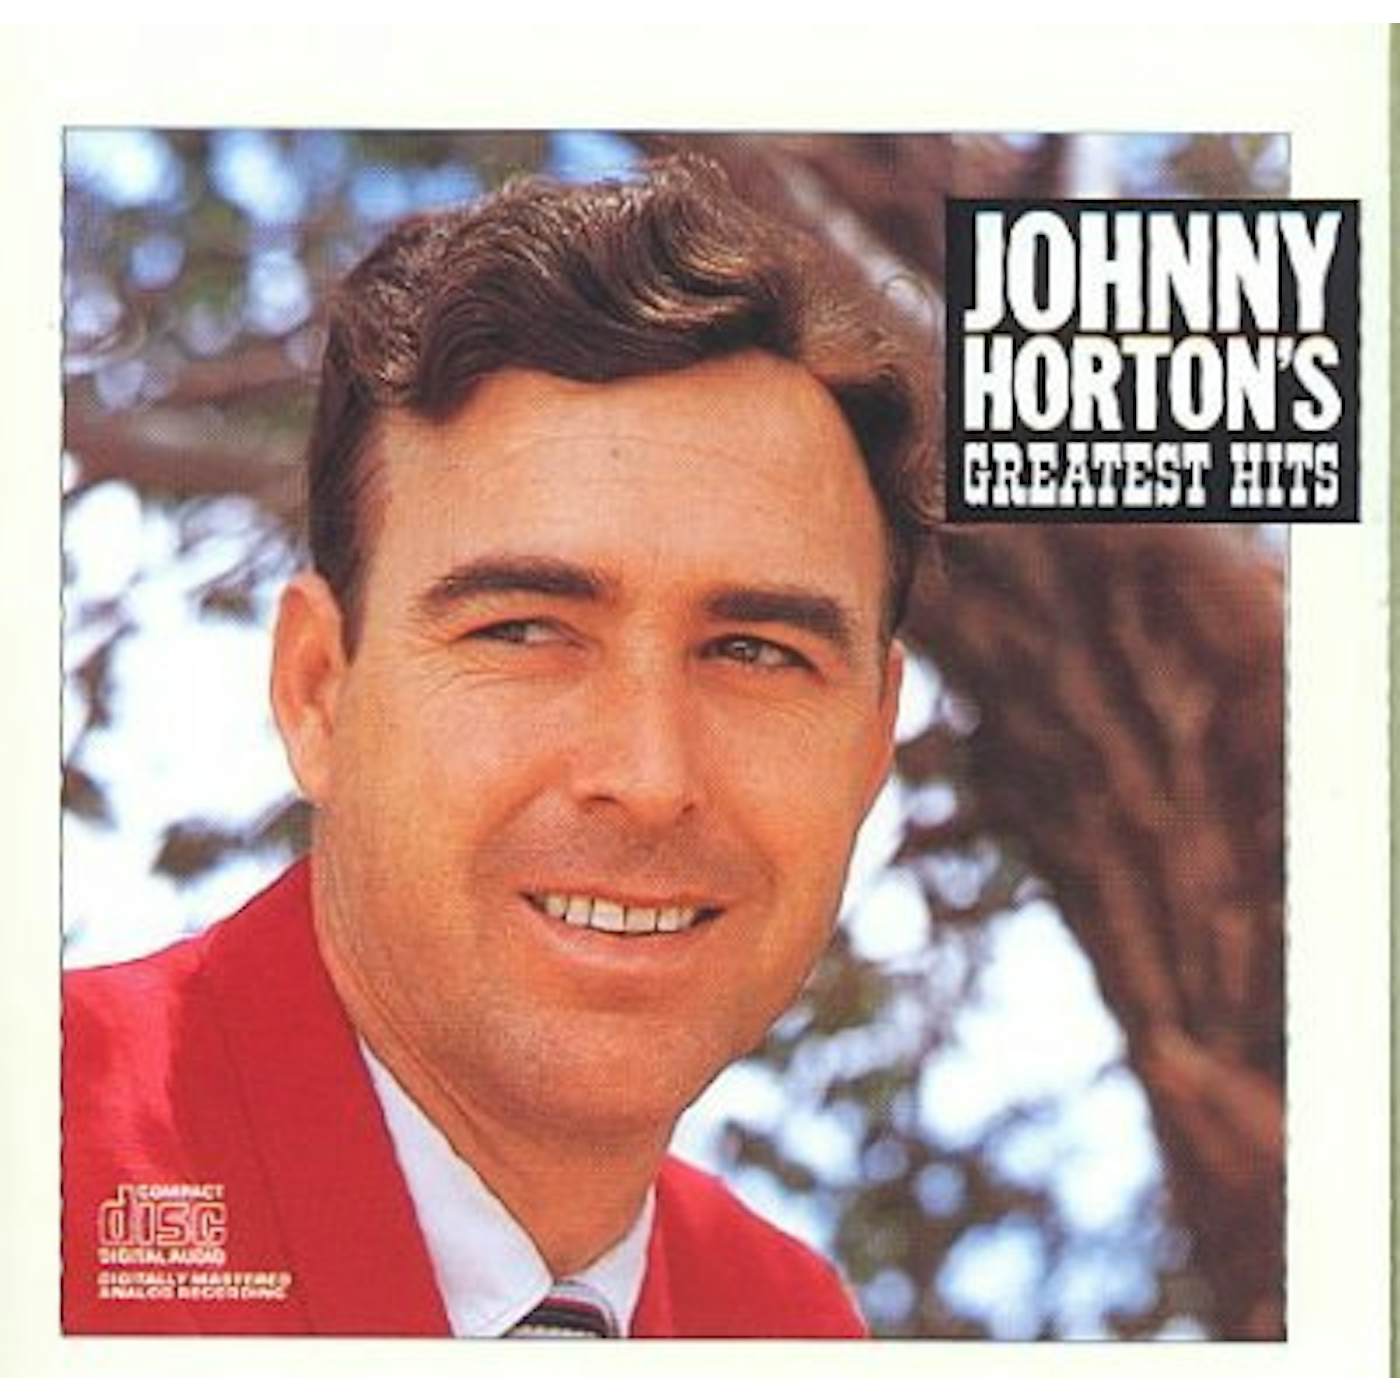 Johnny Horton's Greatest Hits CD